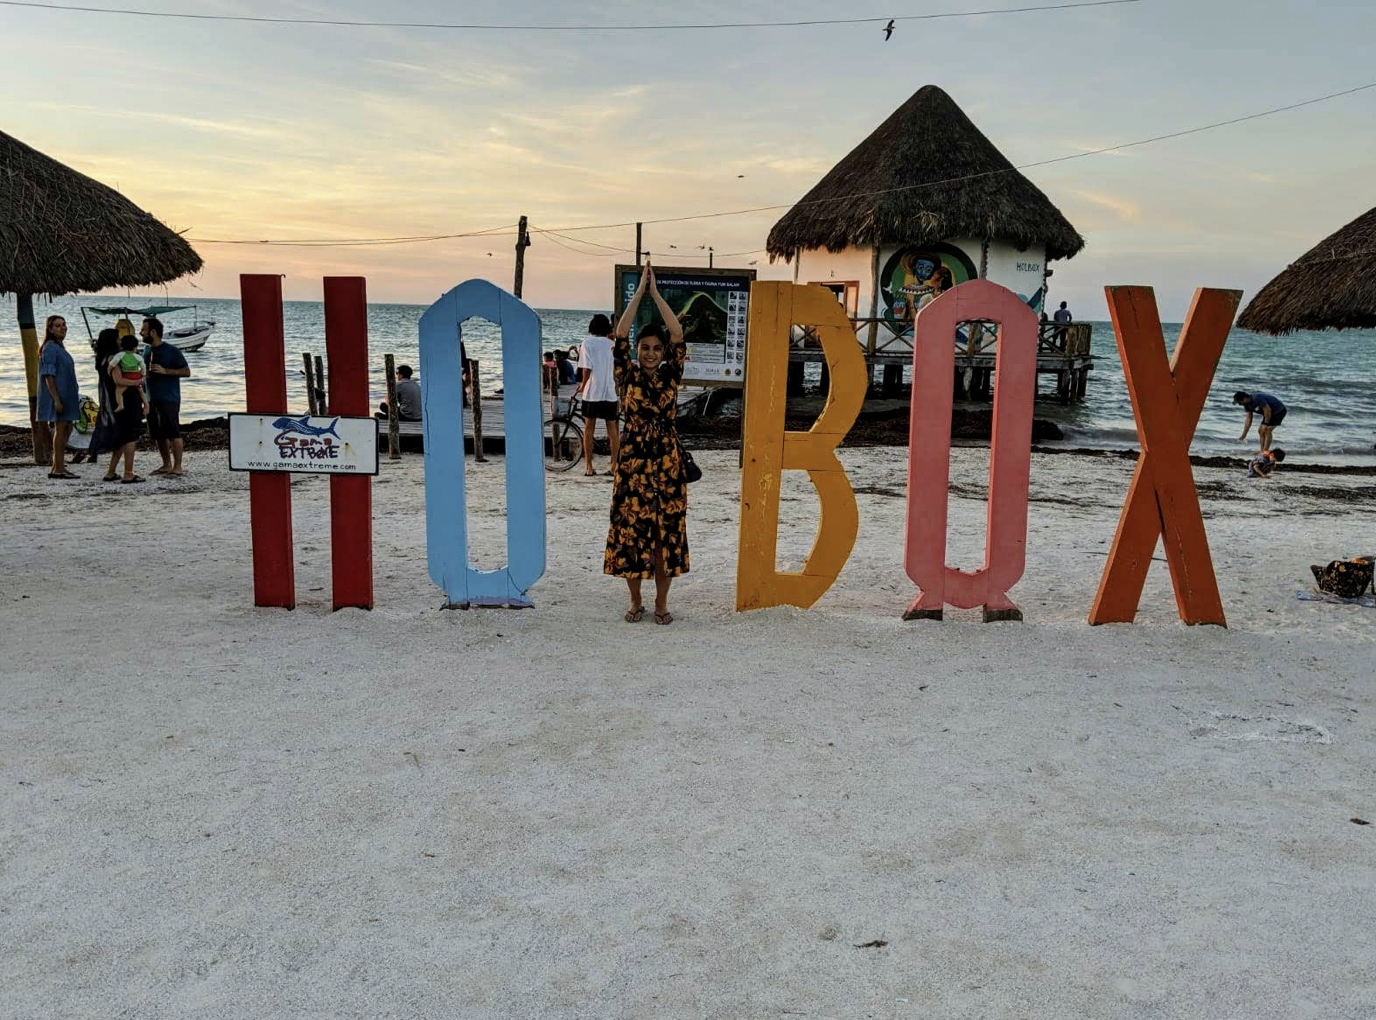 3 Días en Holbox, Mexico: Que hacer, ver y comer